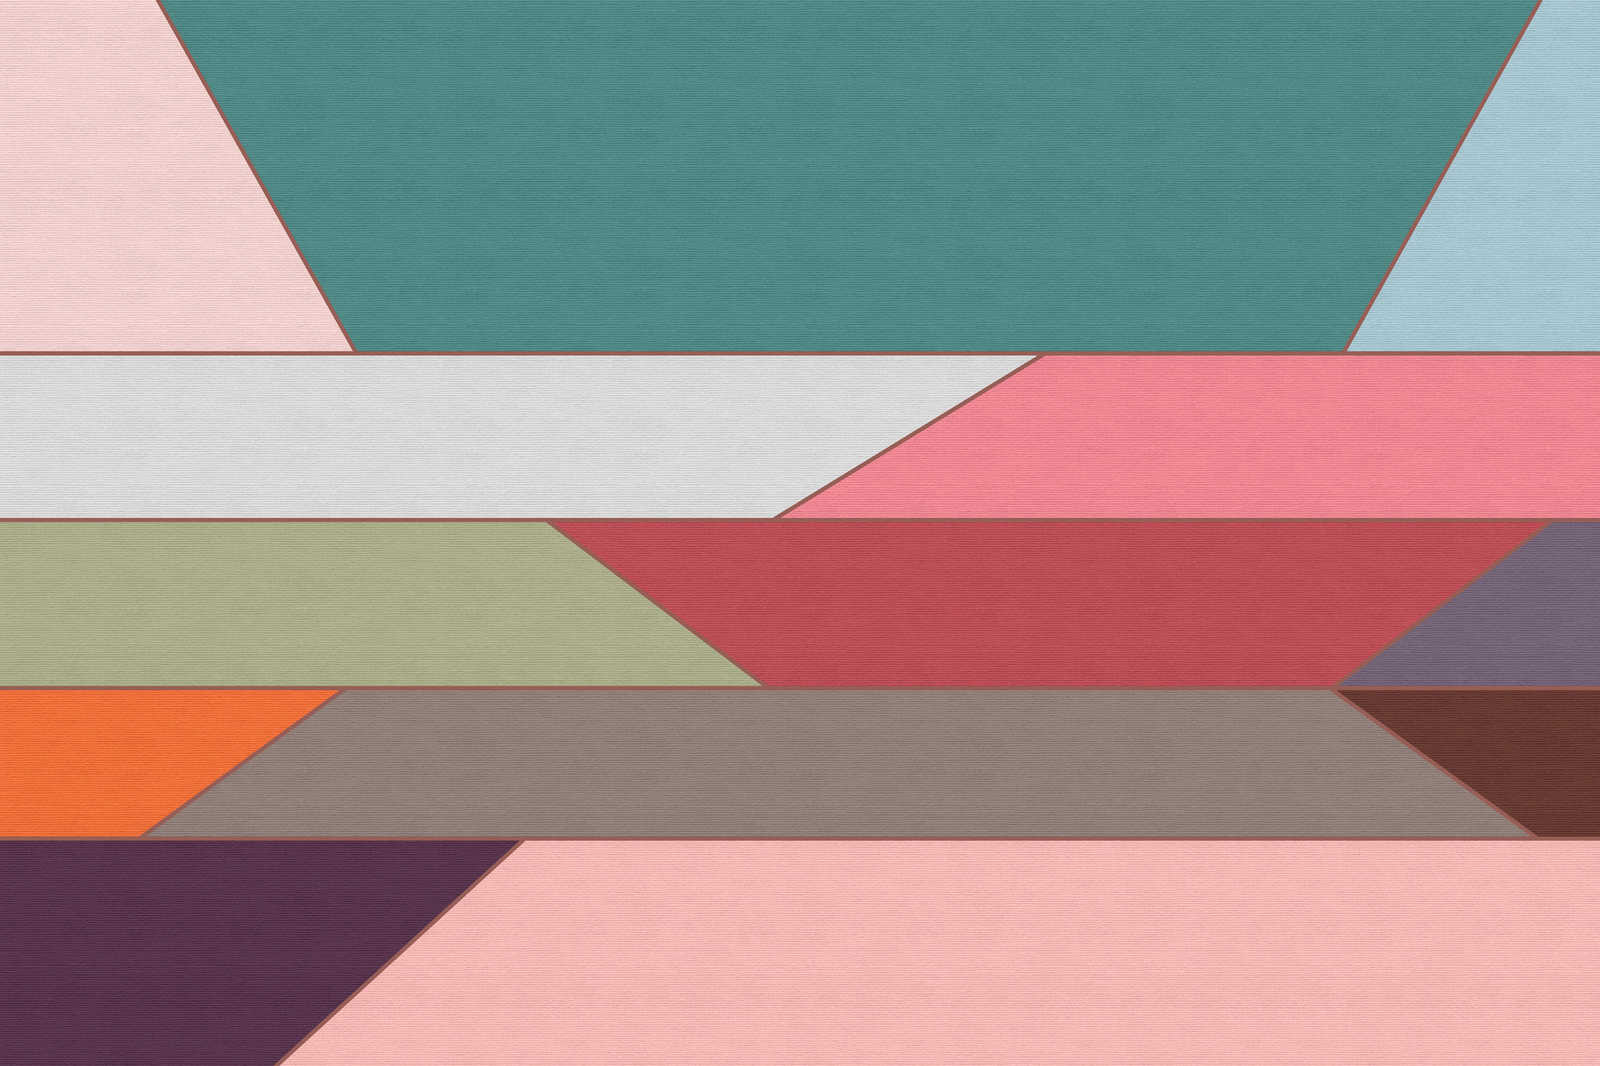             Geometry 2 - Toile avec motif de bandes transversales colorées dans une structure nervurée - 0,90 m x 0,60 m
        